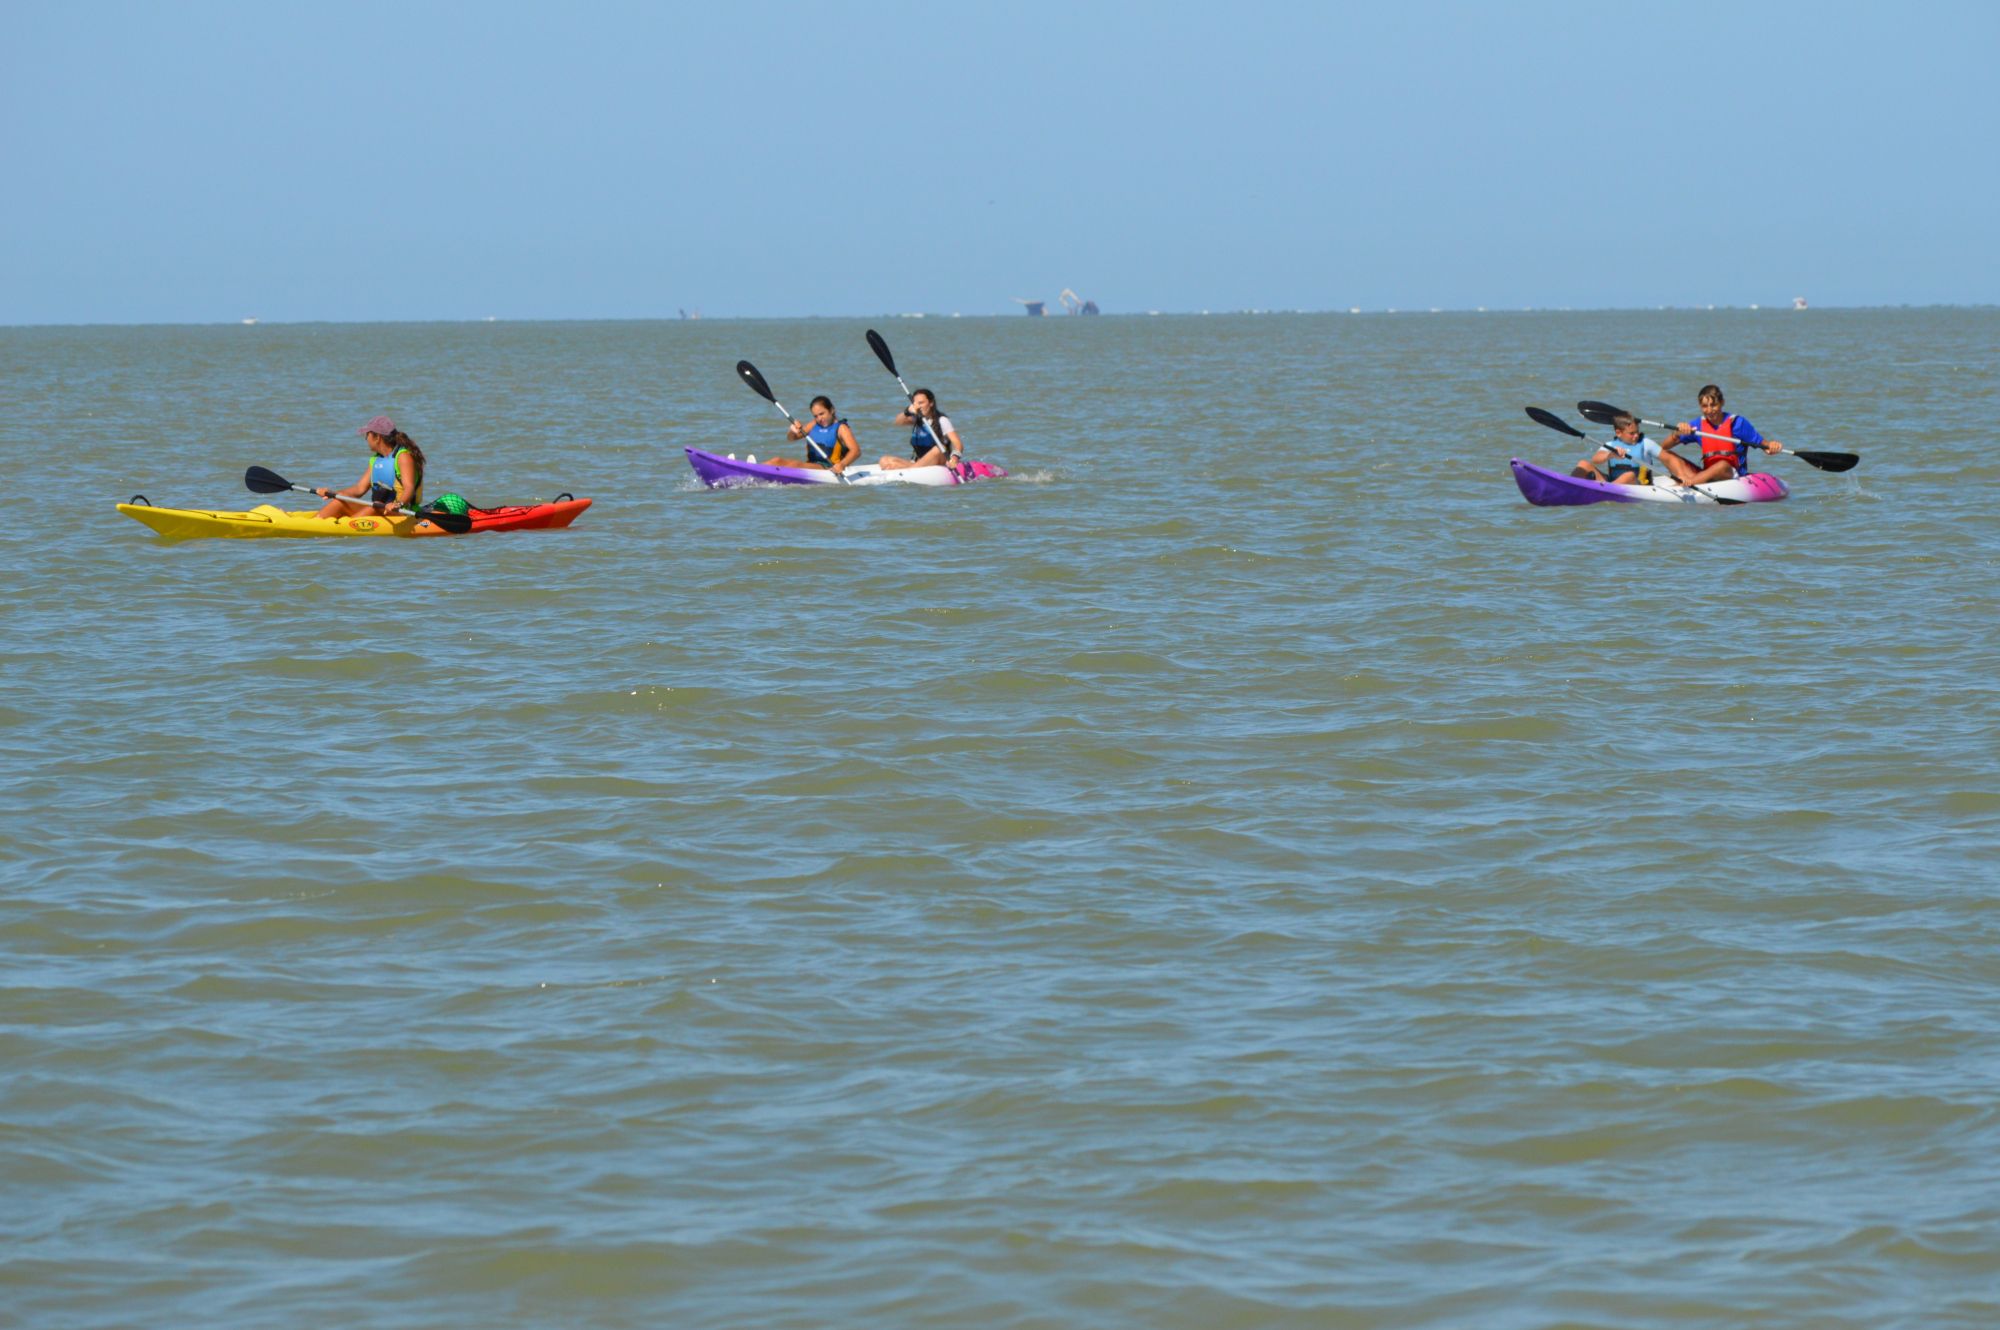 Escuela naútica para niños en Sanlucar con kayaks